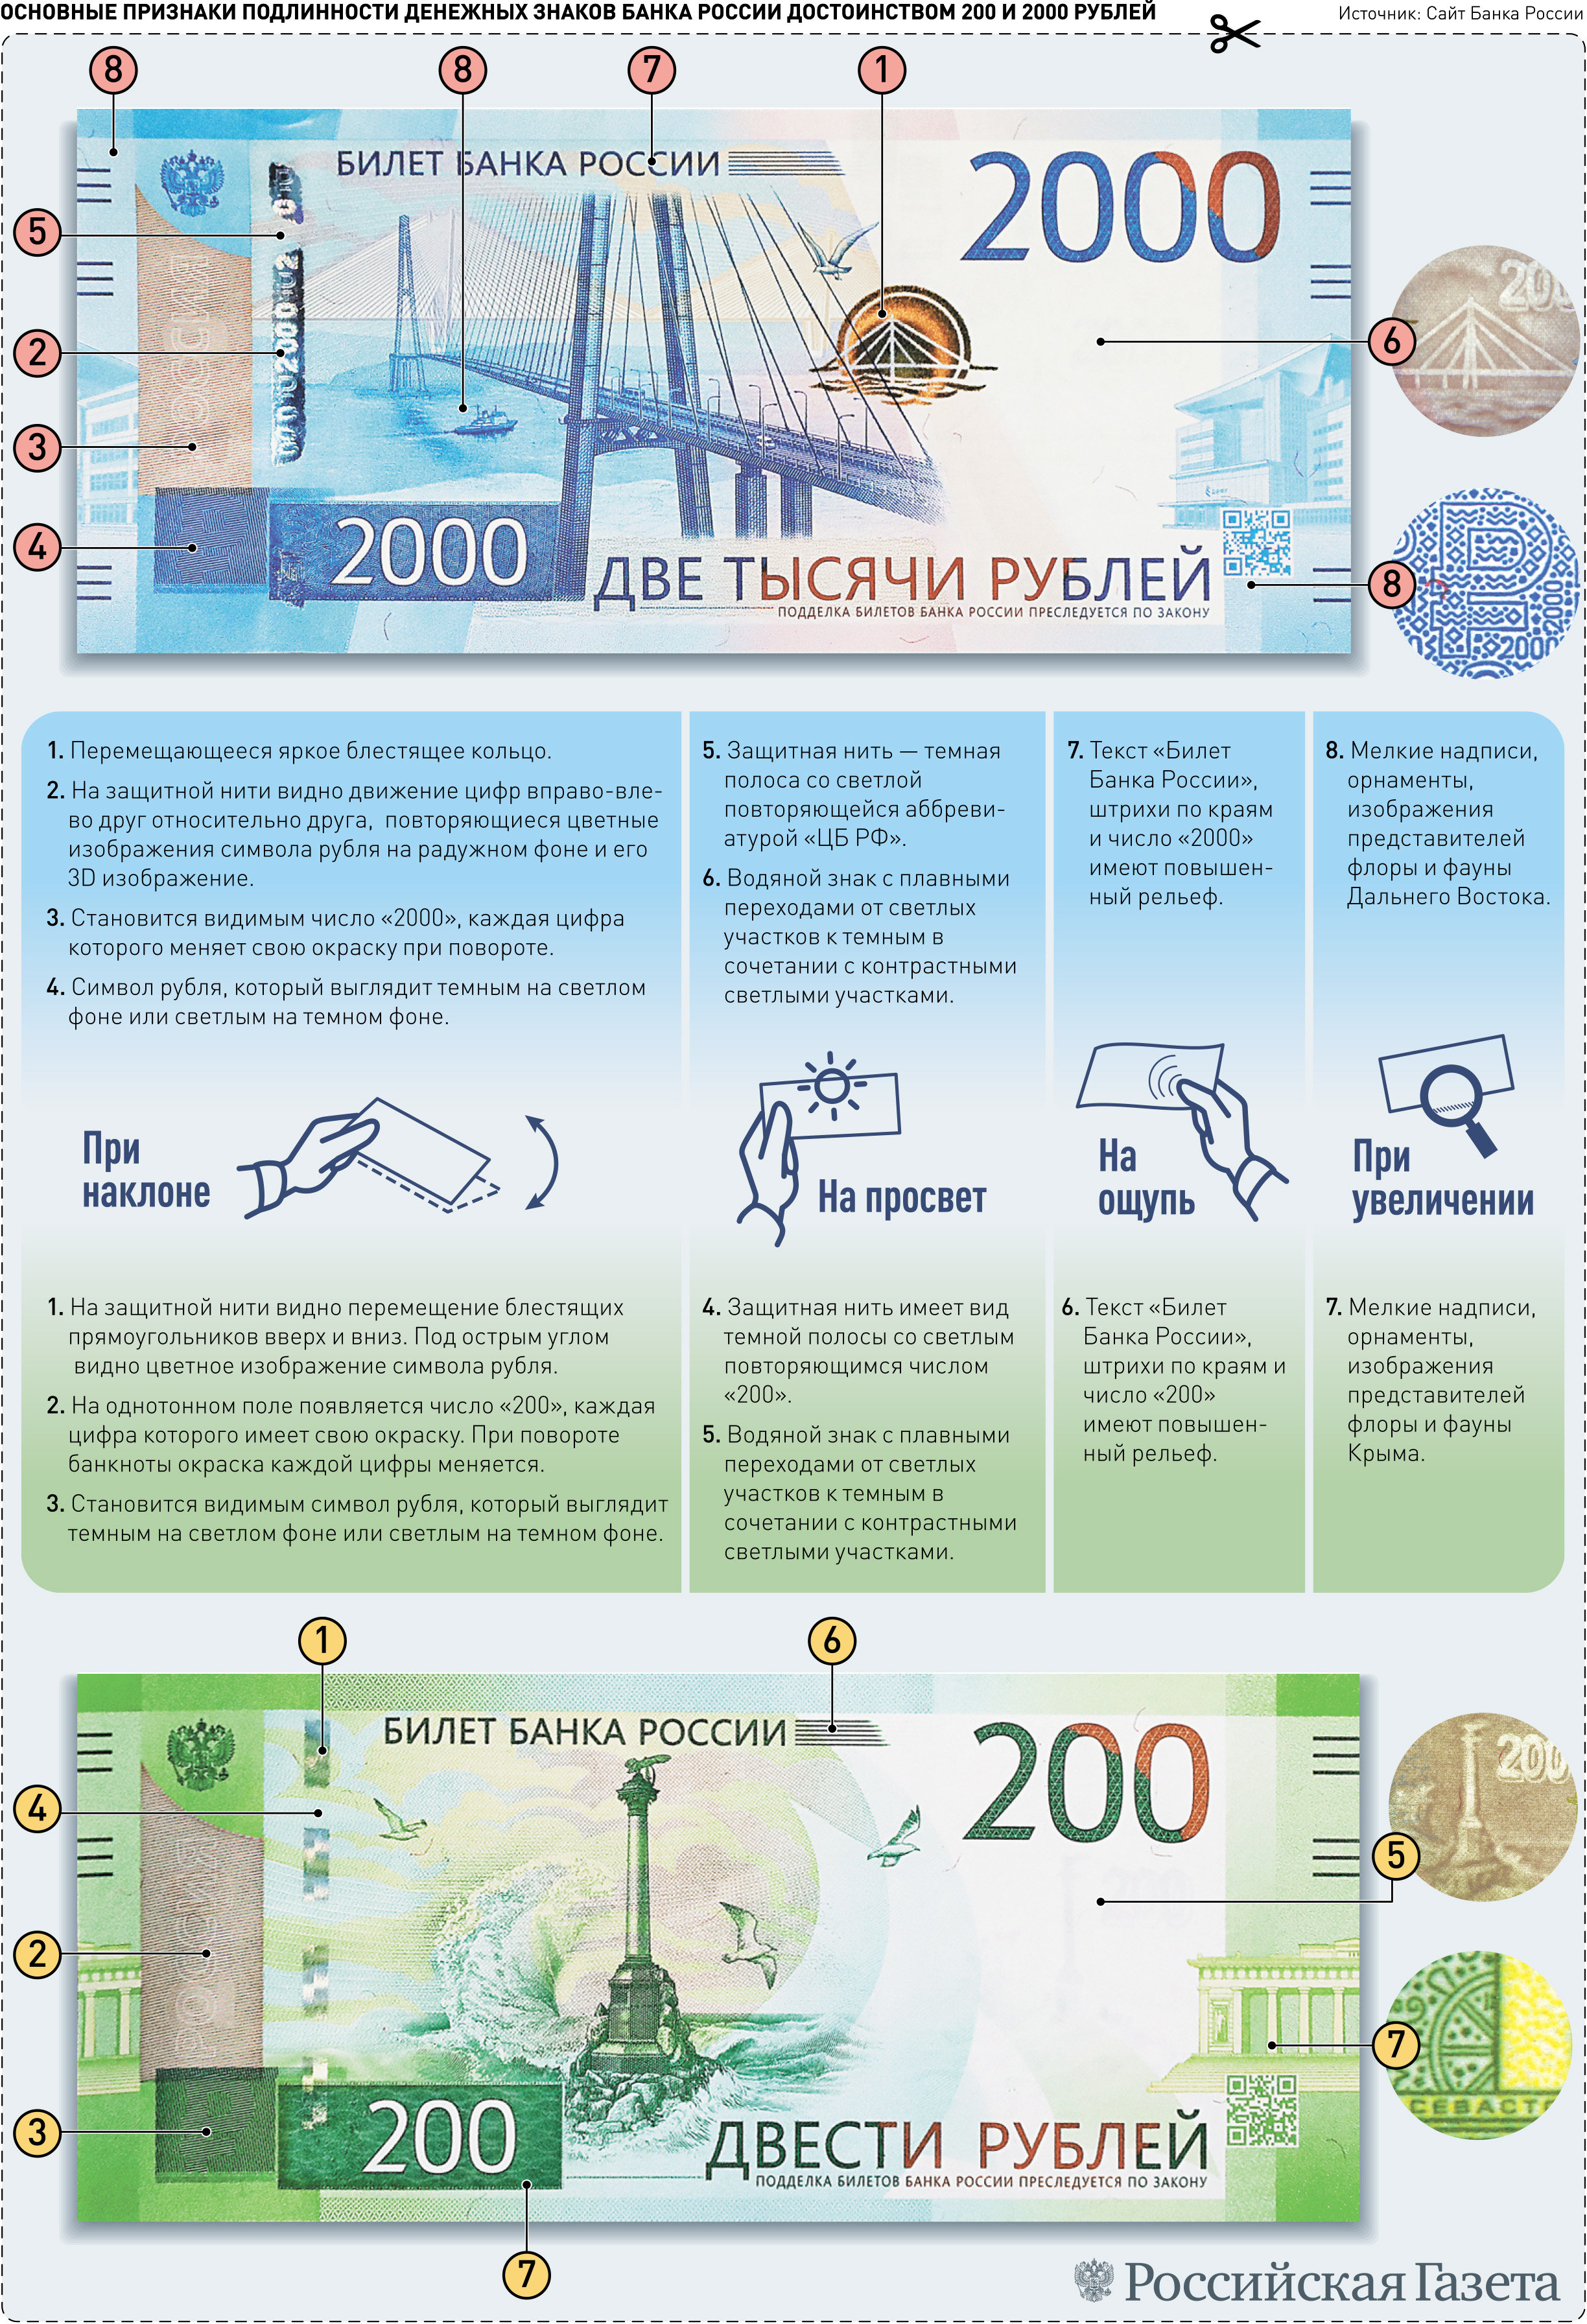 200 рублей информация